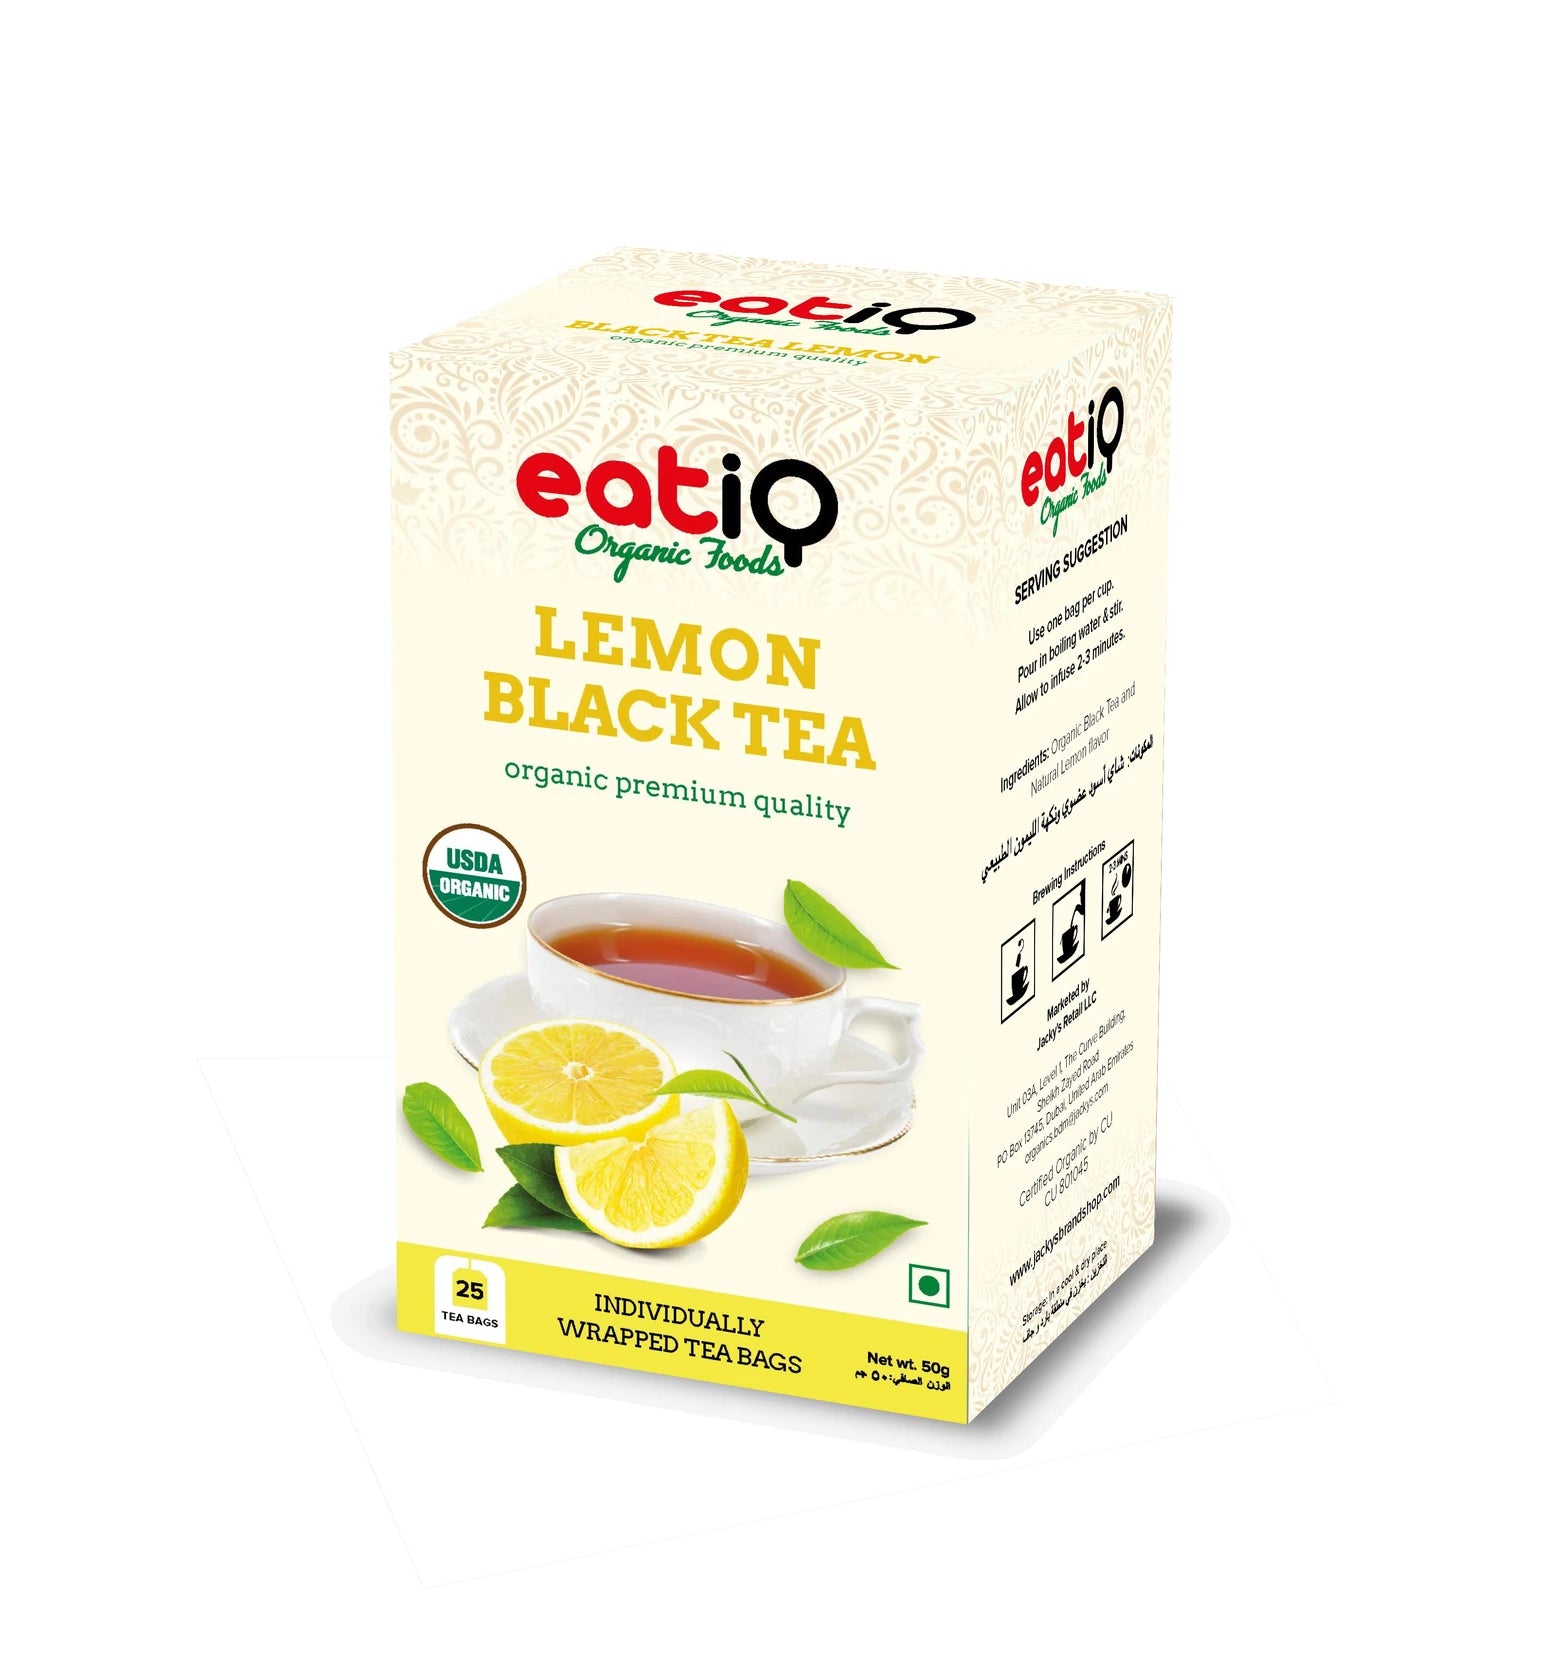 EATIQ ORGANIC FOODS Black Tea Lemon, 50g